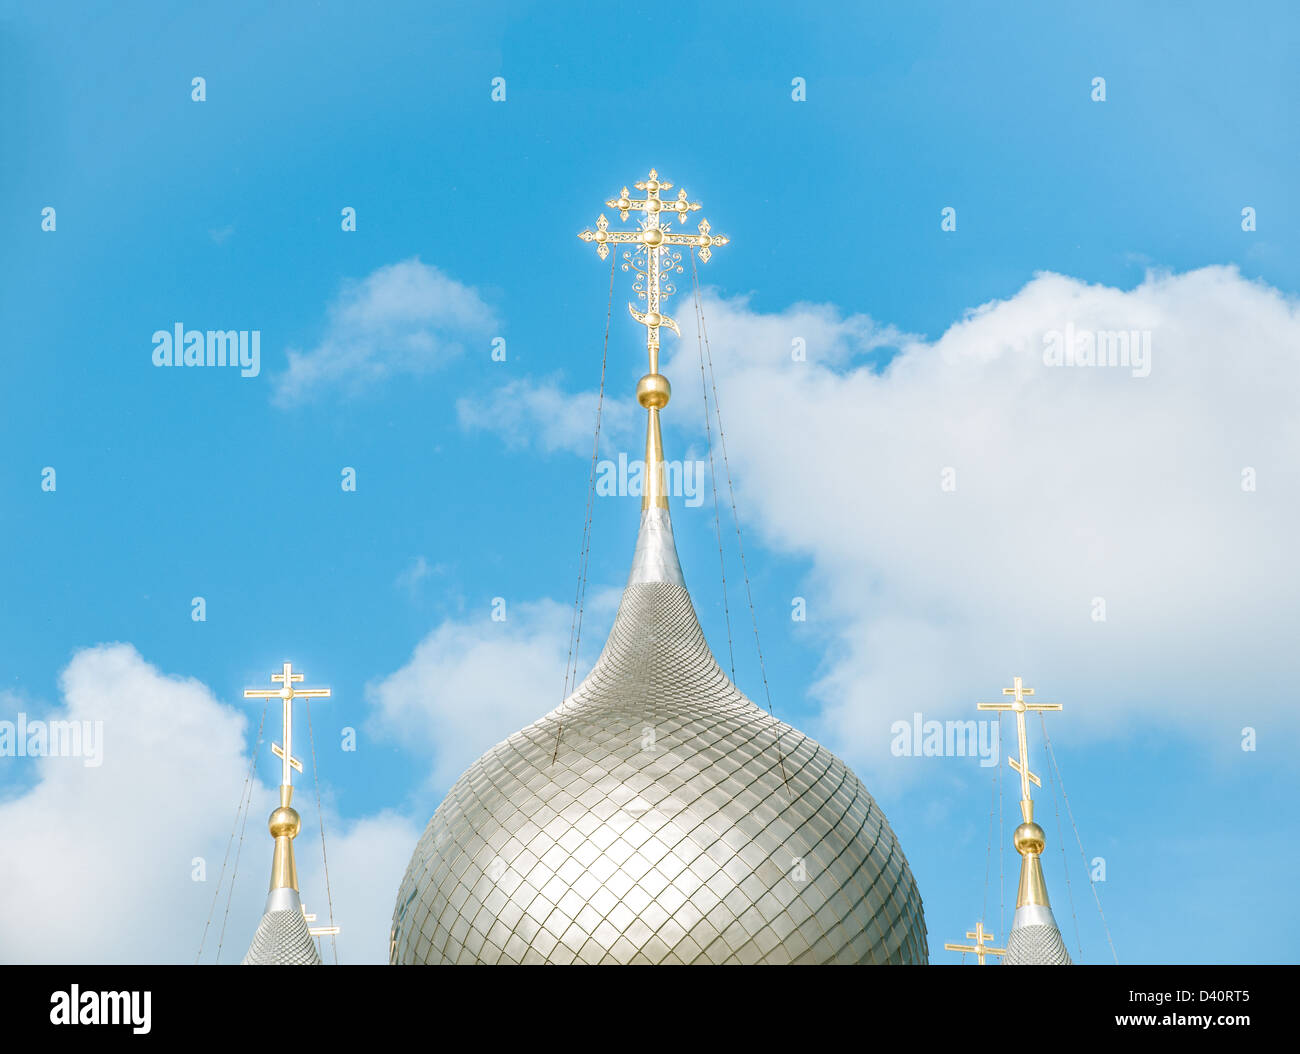 Schönen historischen Gebäudes. Runde Kuppeln und weißen Türmen der orthodoxen Kirche. Strahlend blauer Himmel mit weißen Wolken im Hintergrund. Stockfoto